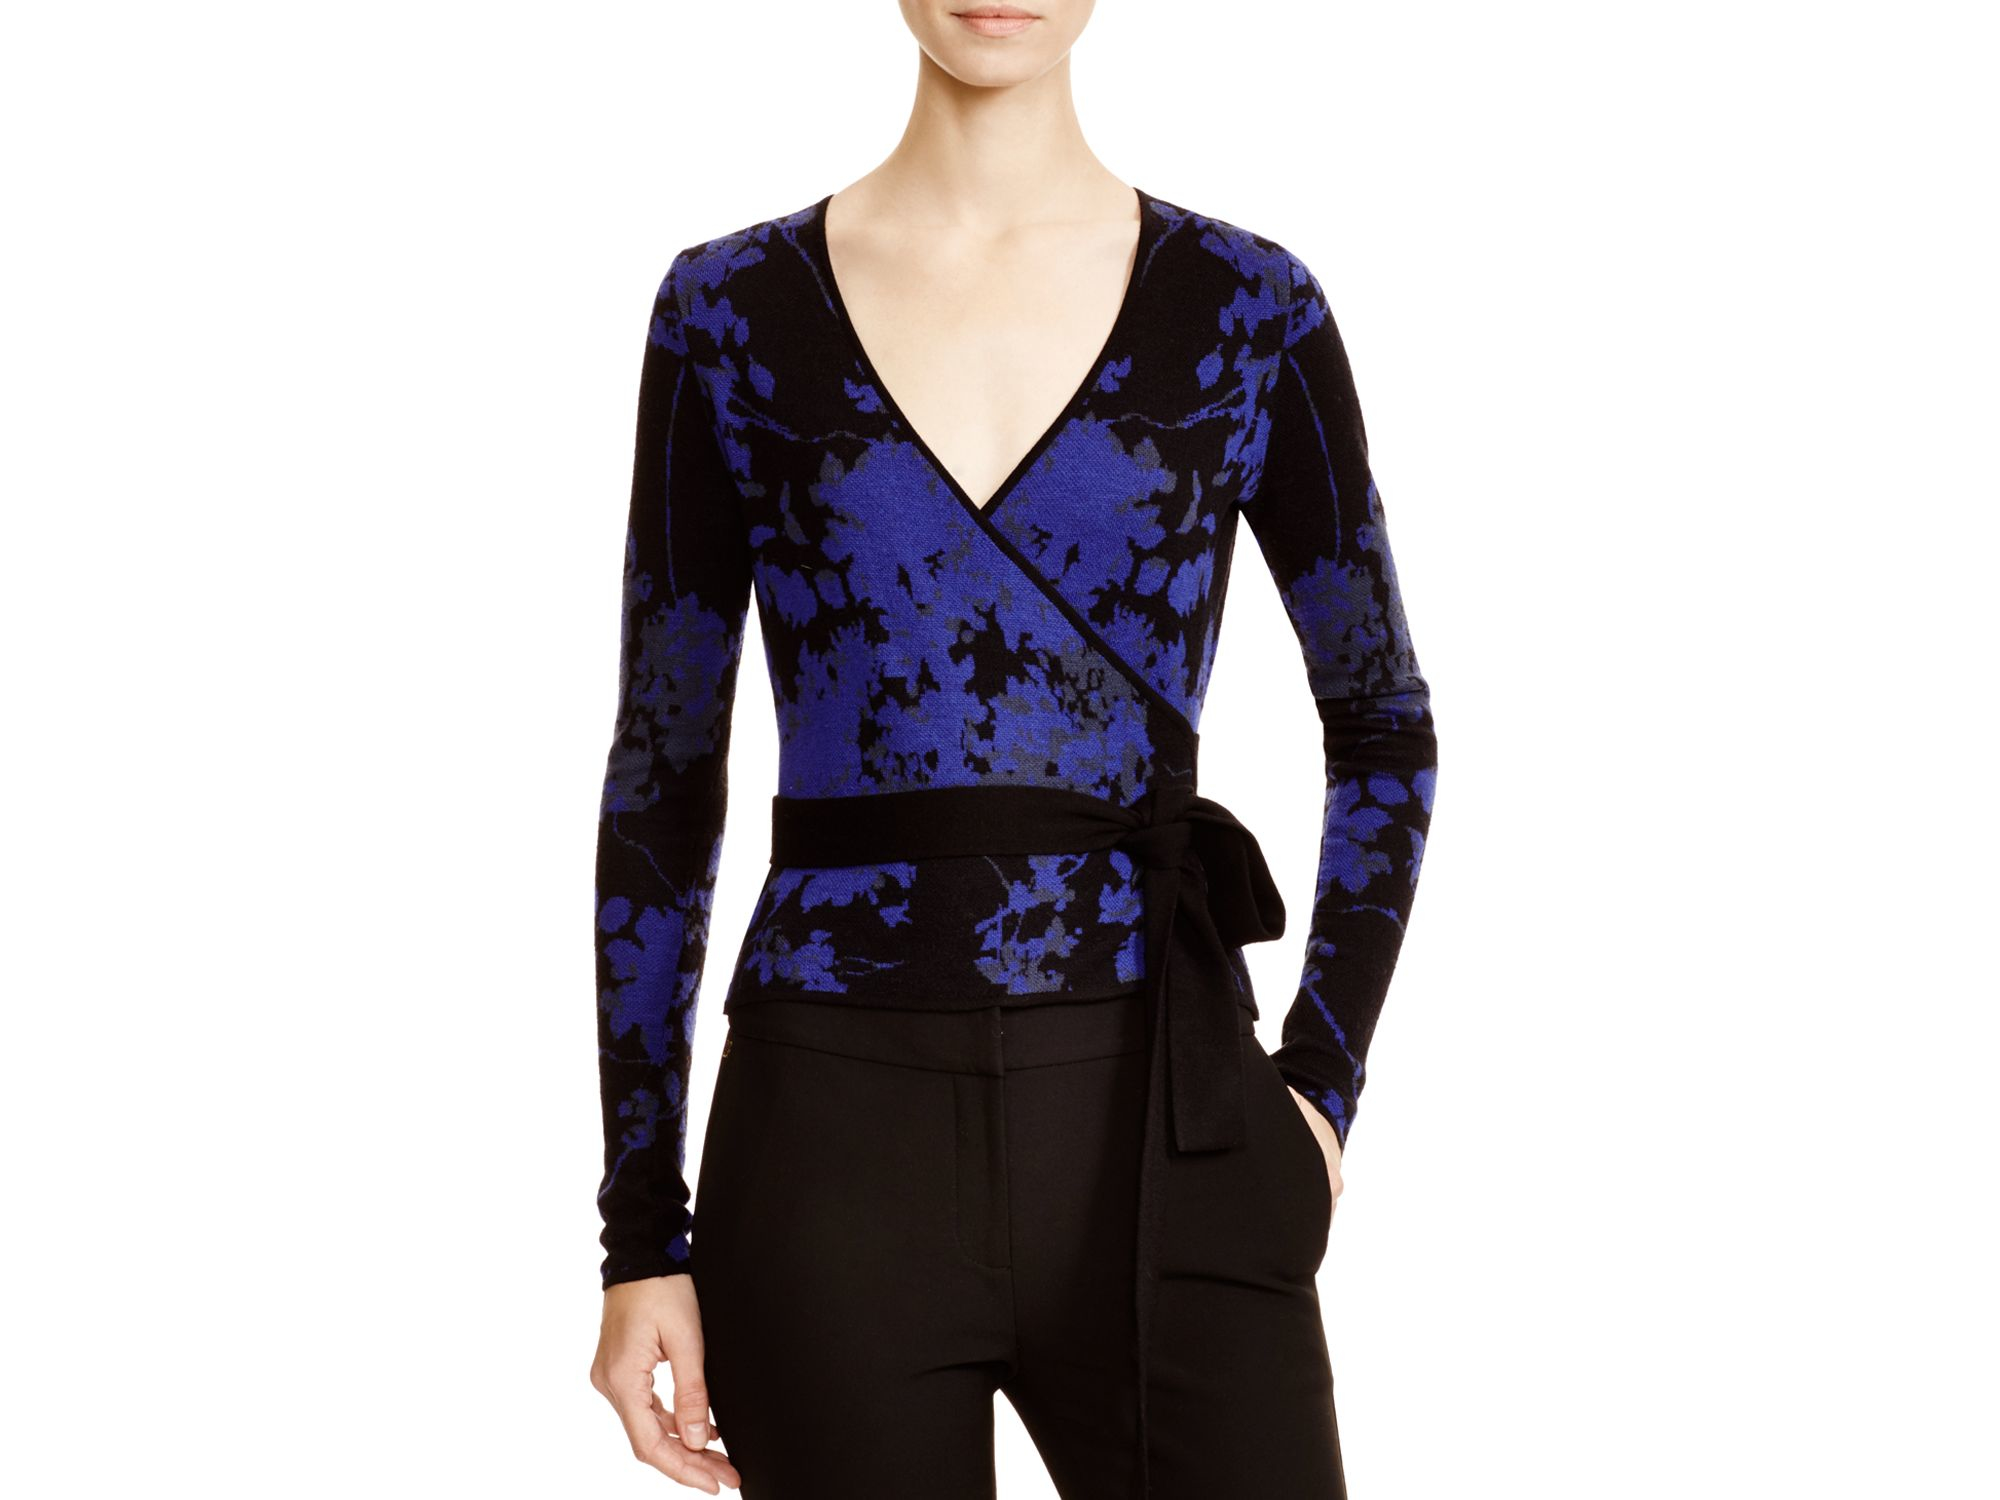 Diane von Furstenberg Kyla Floral Jacquard Wrap Sweater in Black - Lyst